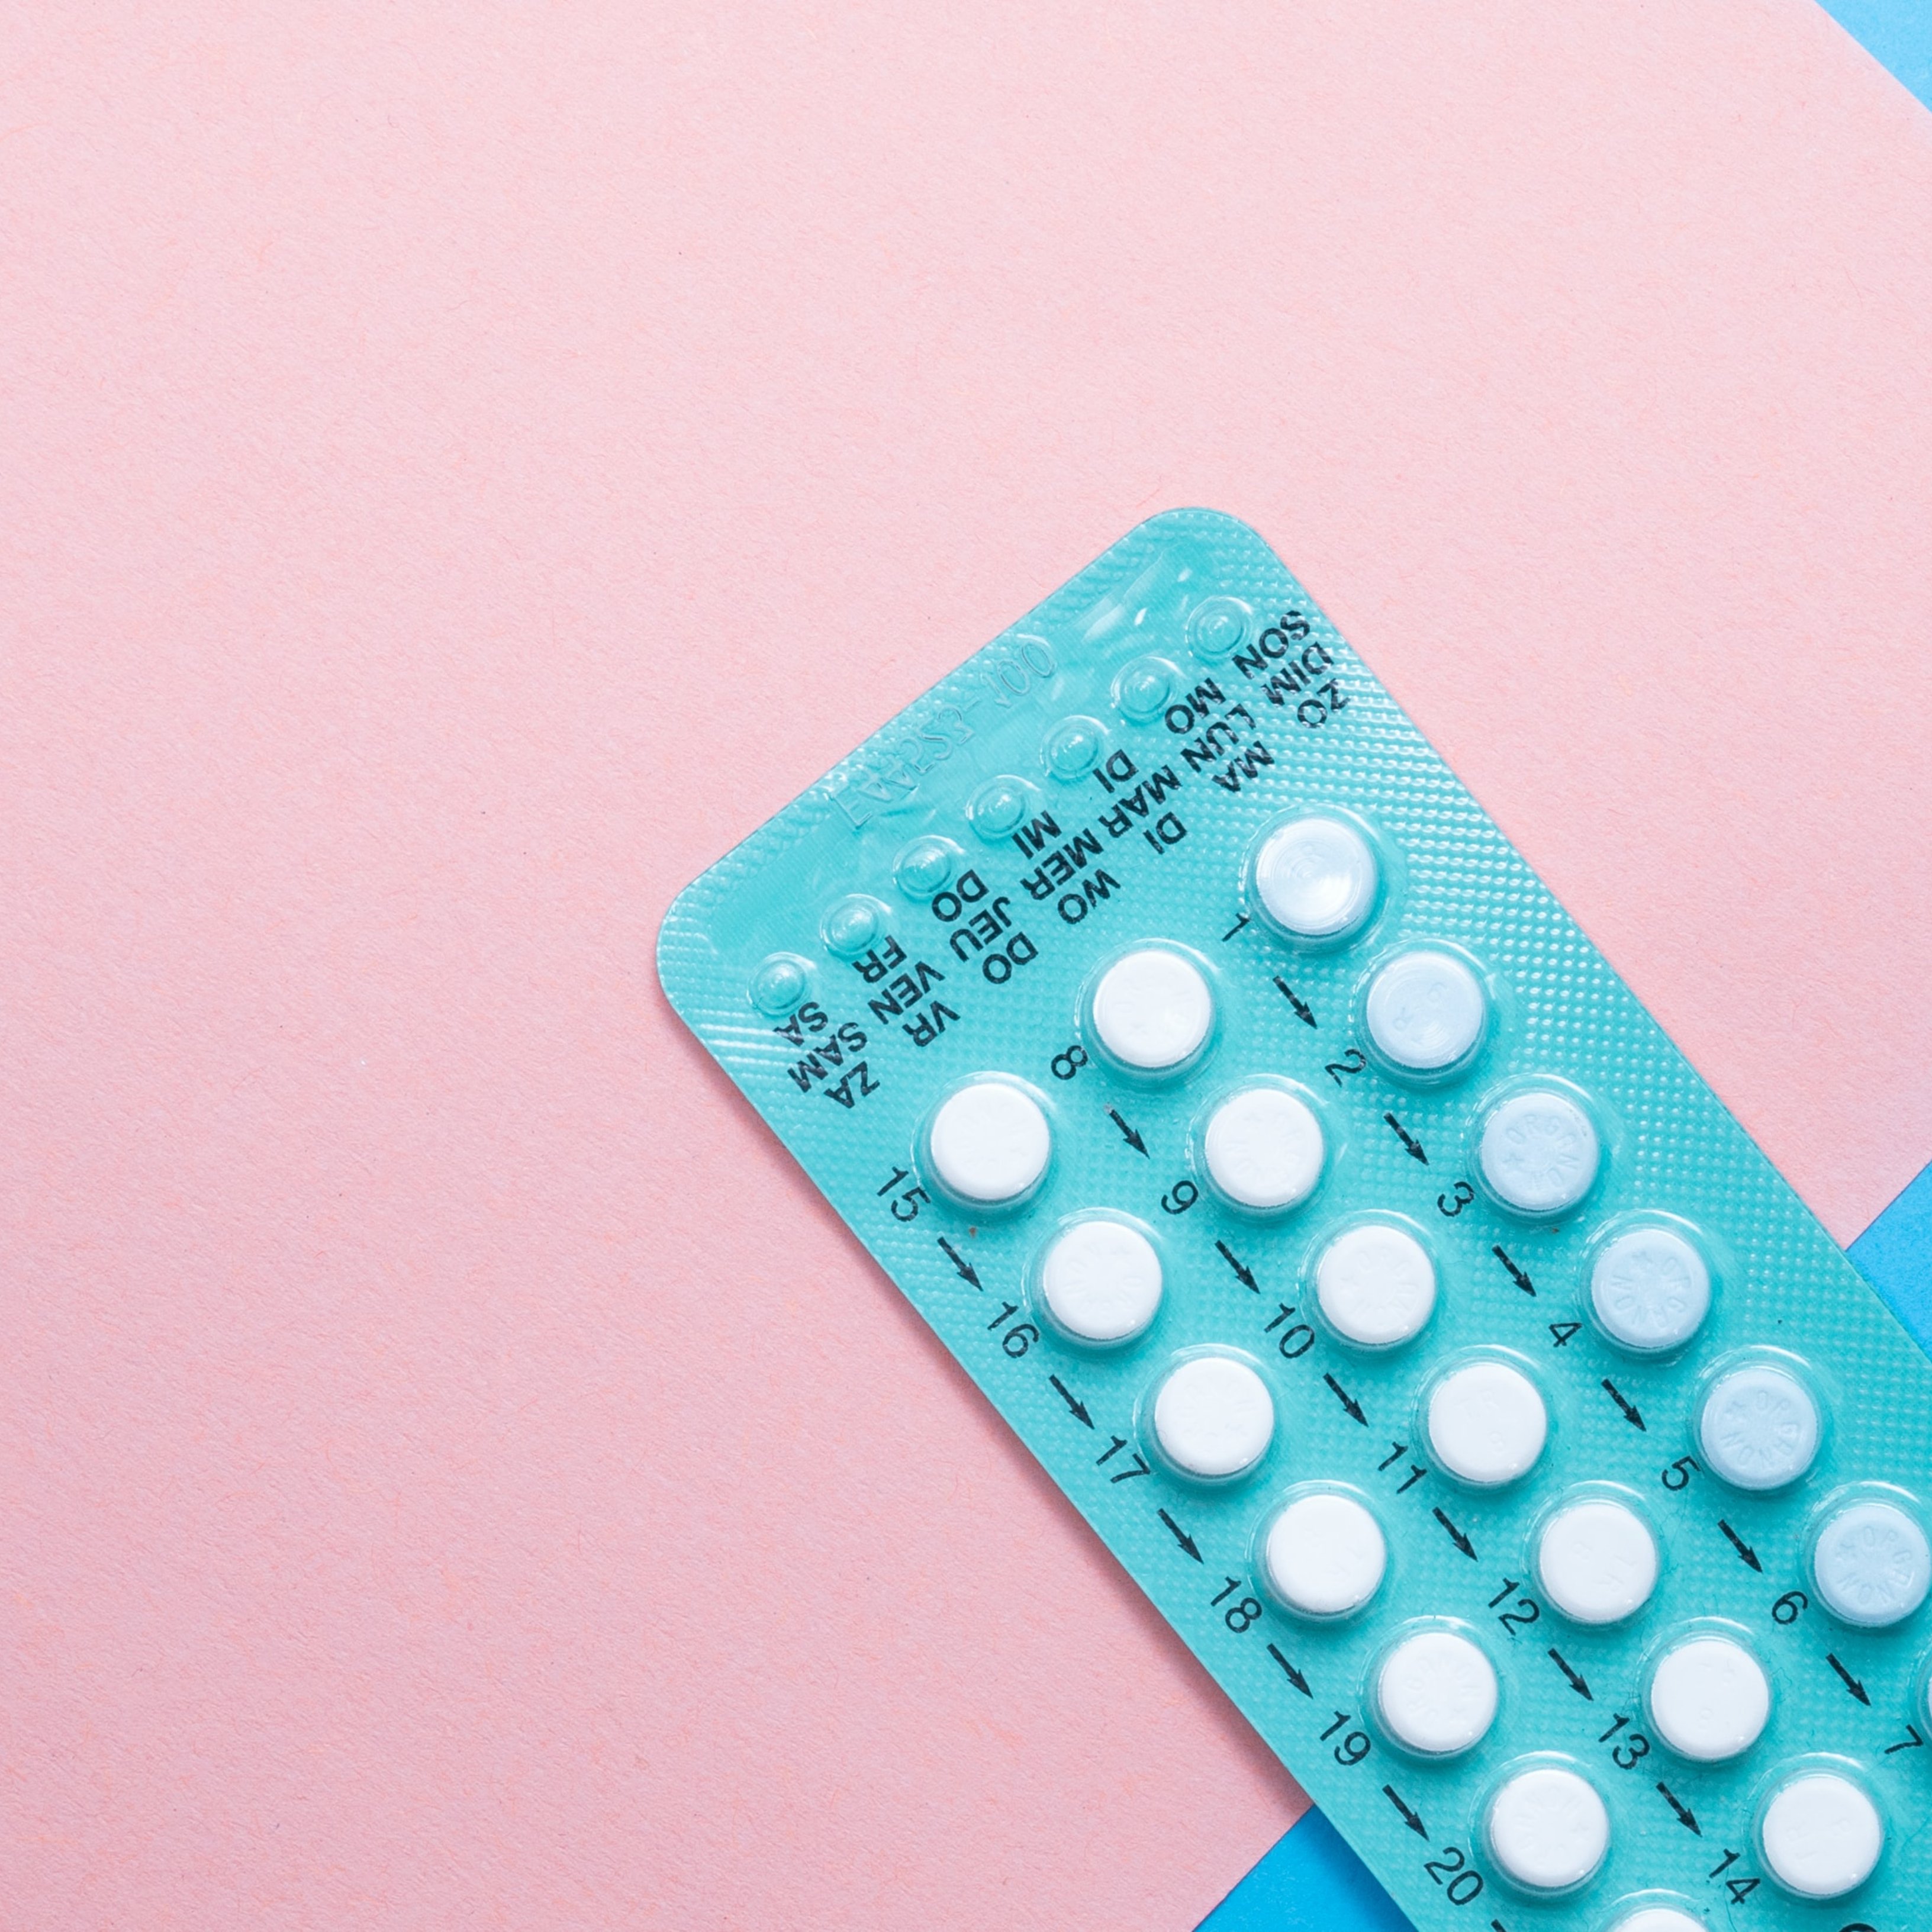 Tomar anticonceptivos hormonales está relacionado con menos intentos de suicidio